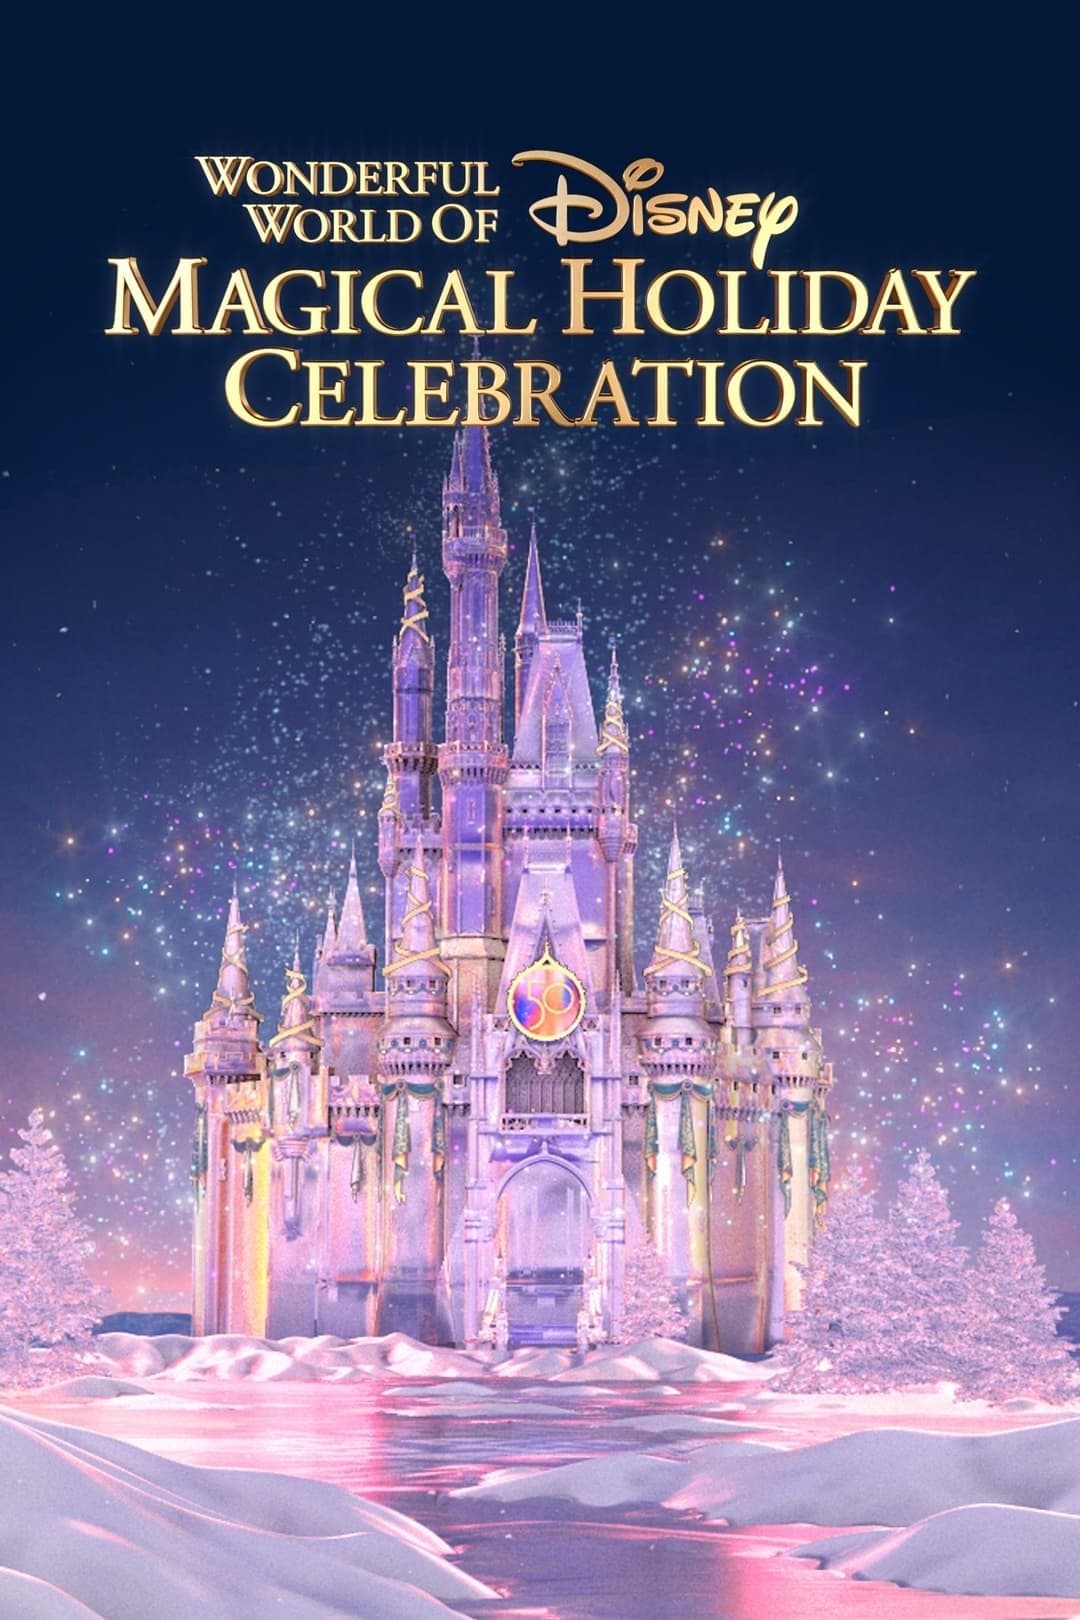 The Wonderful World of Disney: Magical Holiday Celebration film